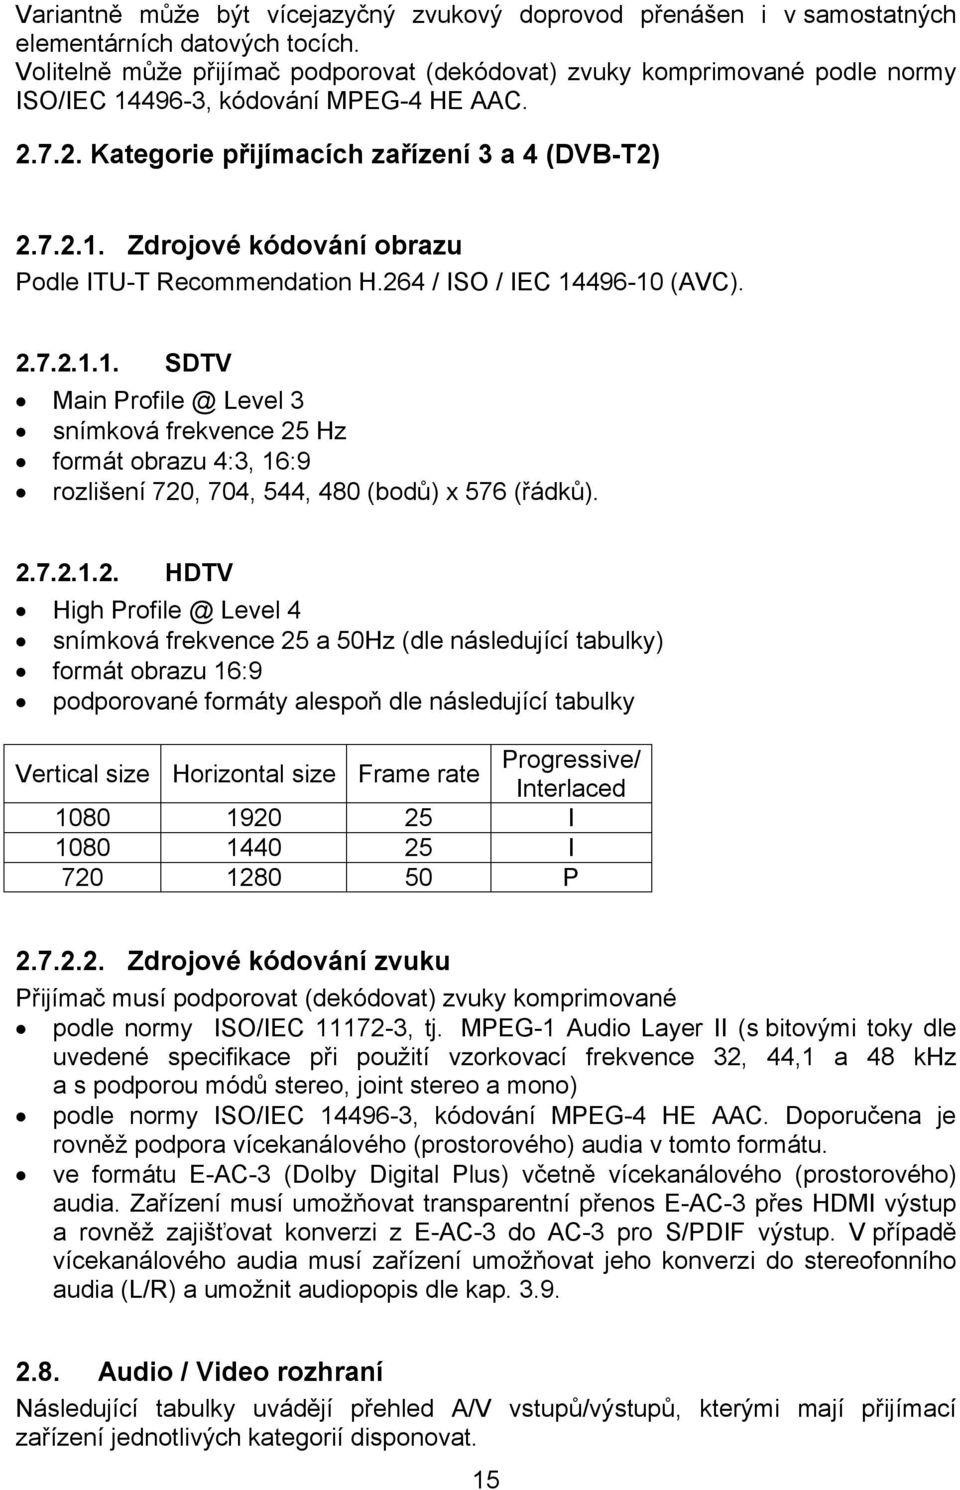 264 / ISO / IEC 14496-10 (AVC). 2.7.2.1.1. SDTV Main Profile @ Level 3 snímková frekvence 25 Hz formát obrazu 4:3, 16:9 rozlišení 720, 704, 544, 480 (bodů) x 576 (řádků). 2.7.2.1.2. HDTV High Profile